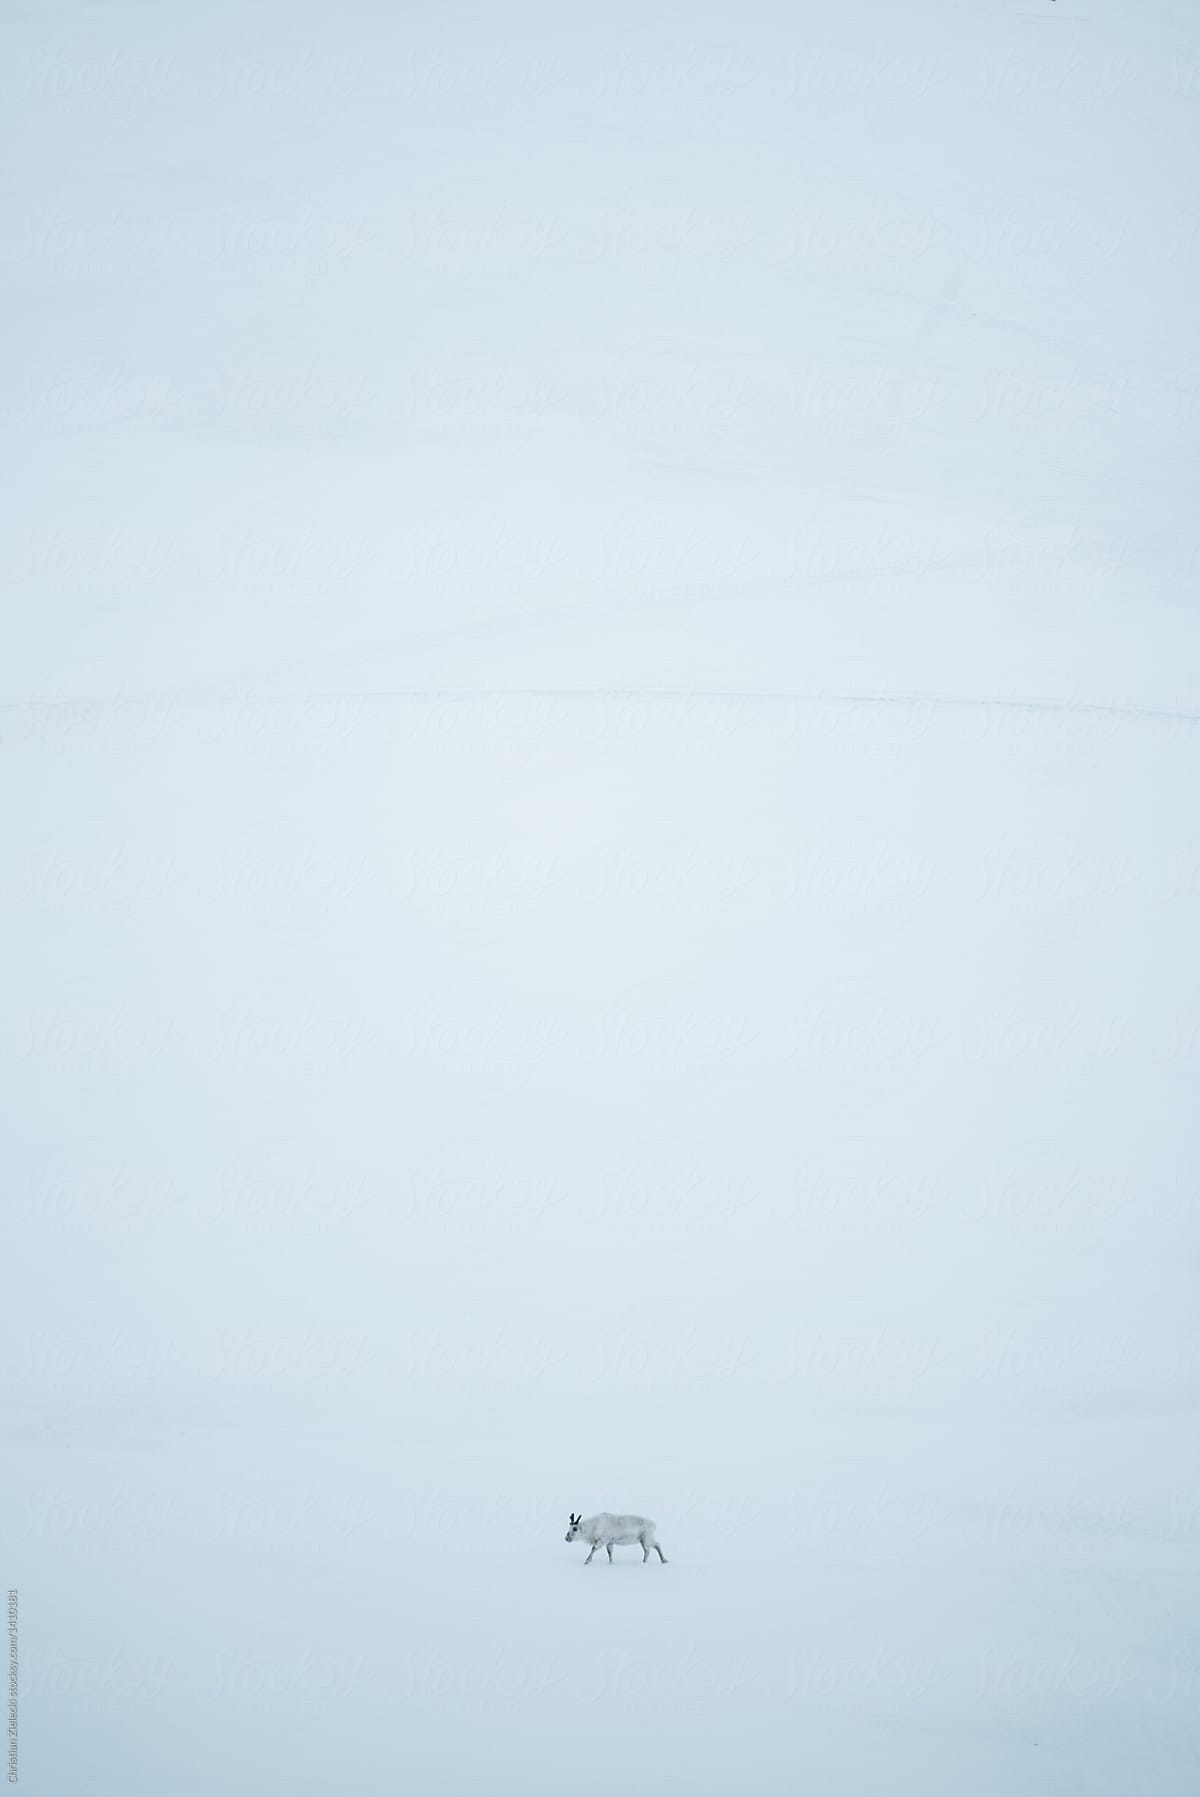 Lonely reindeer walking in snowy terrain